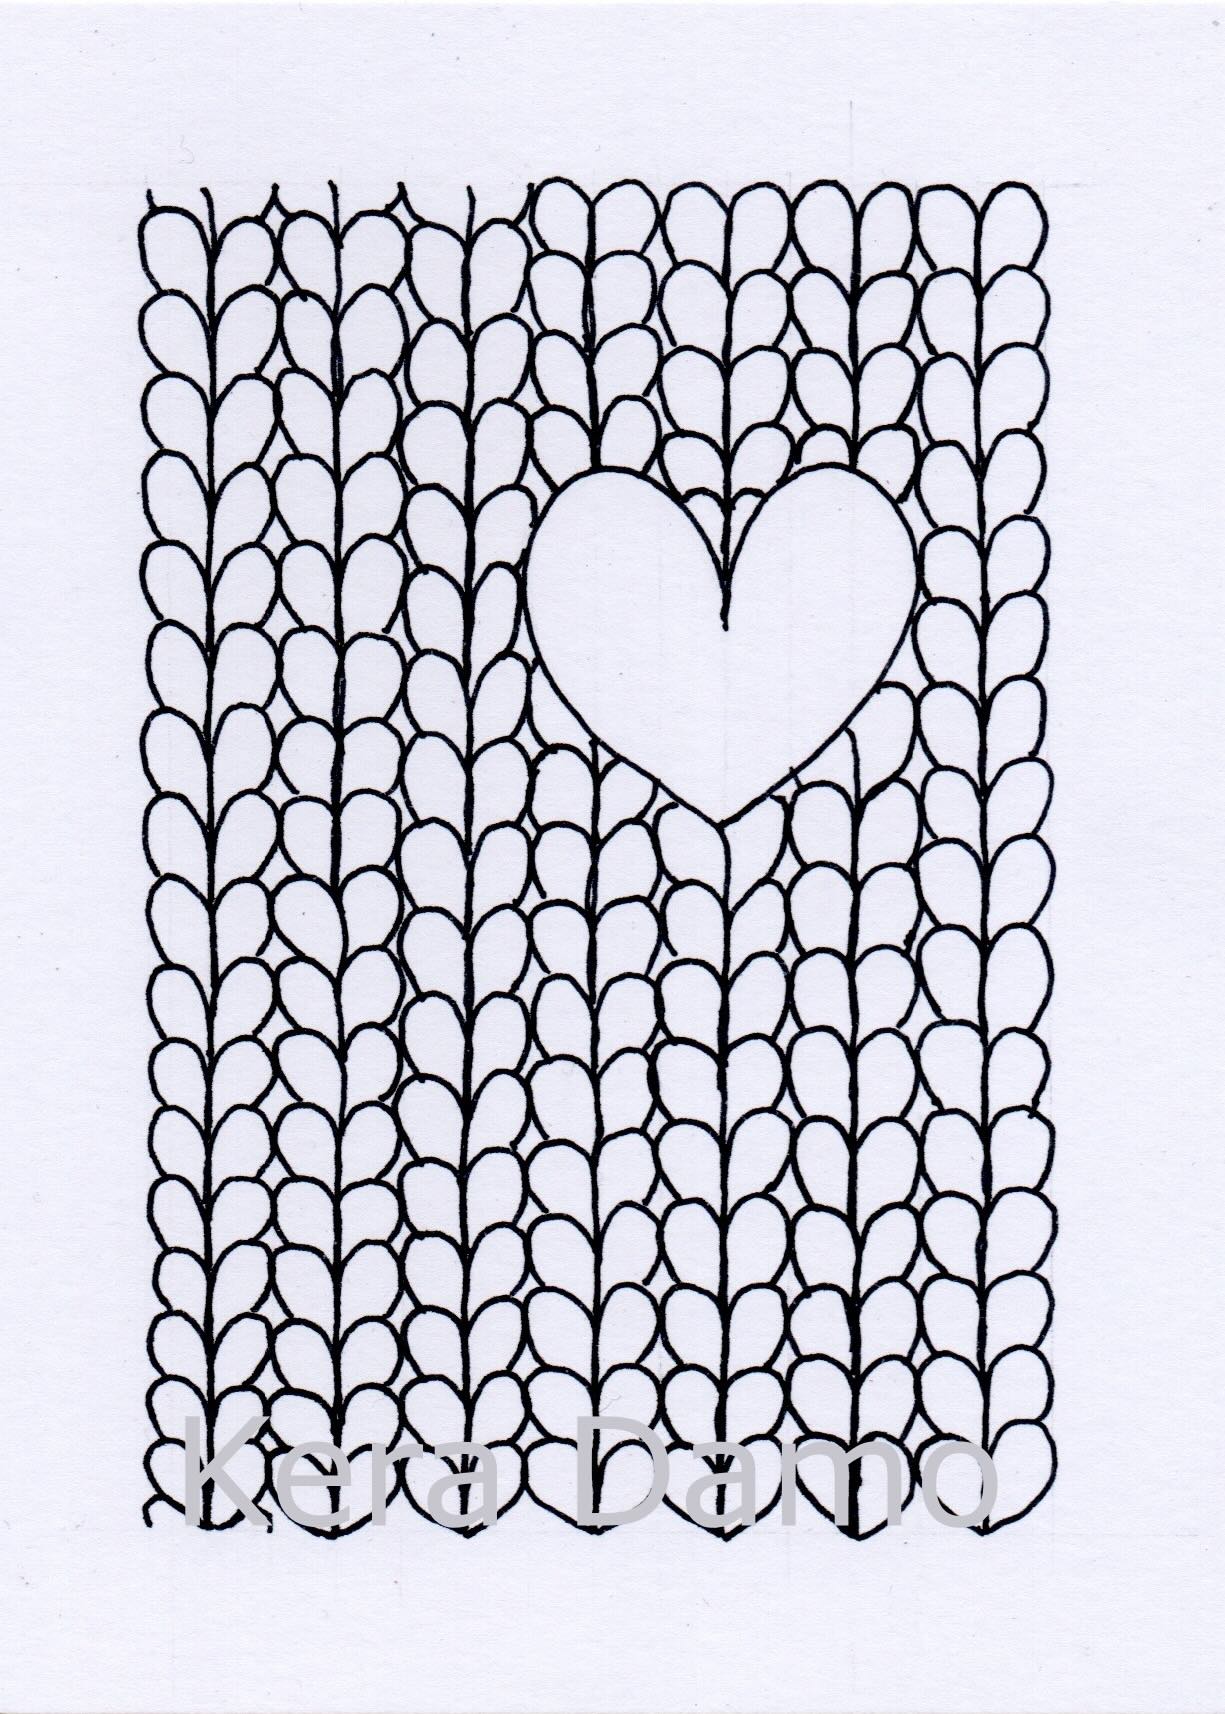 A black and white pen drawing made by visual artist Kera Damo from the Hague / Een zwart wit pentekening gemaakt door beeldend kunstenaar Kera Damo uit Den Haag